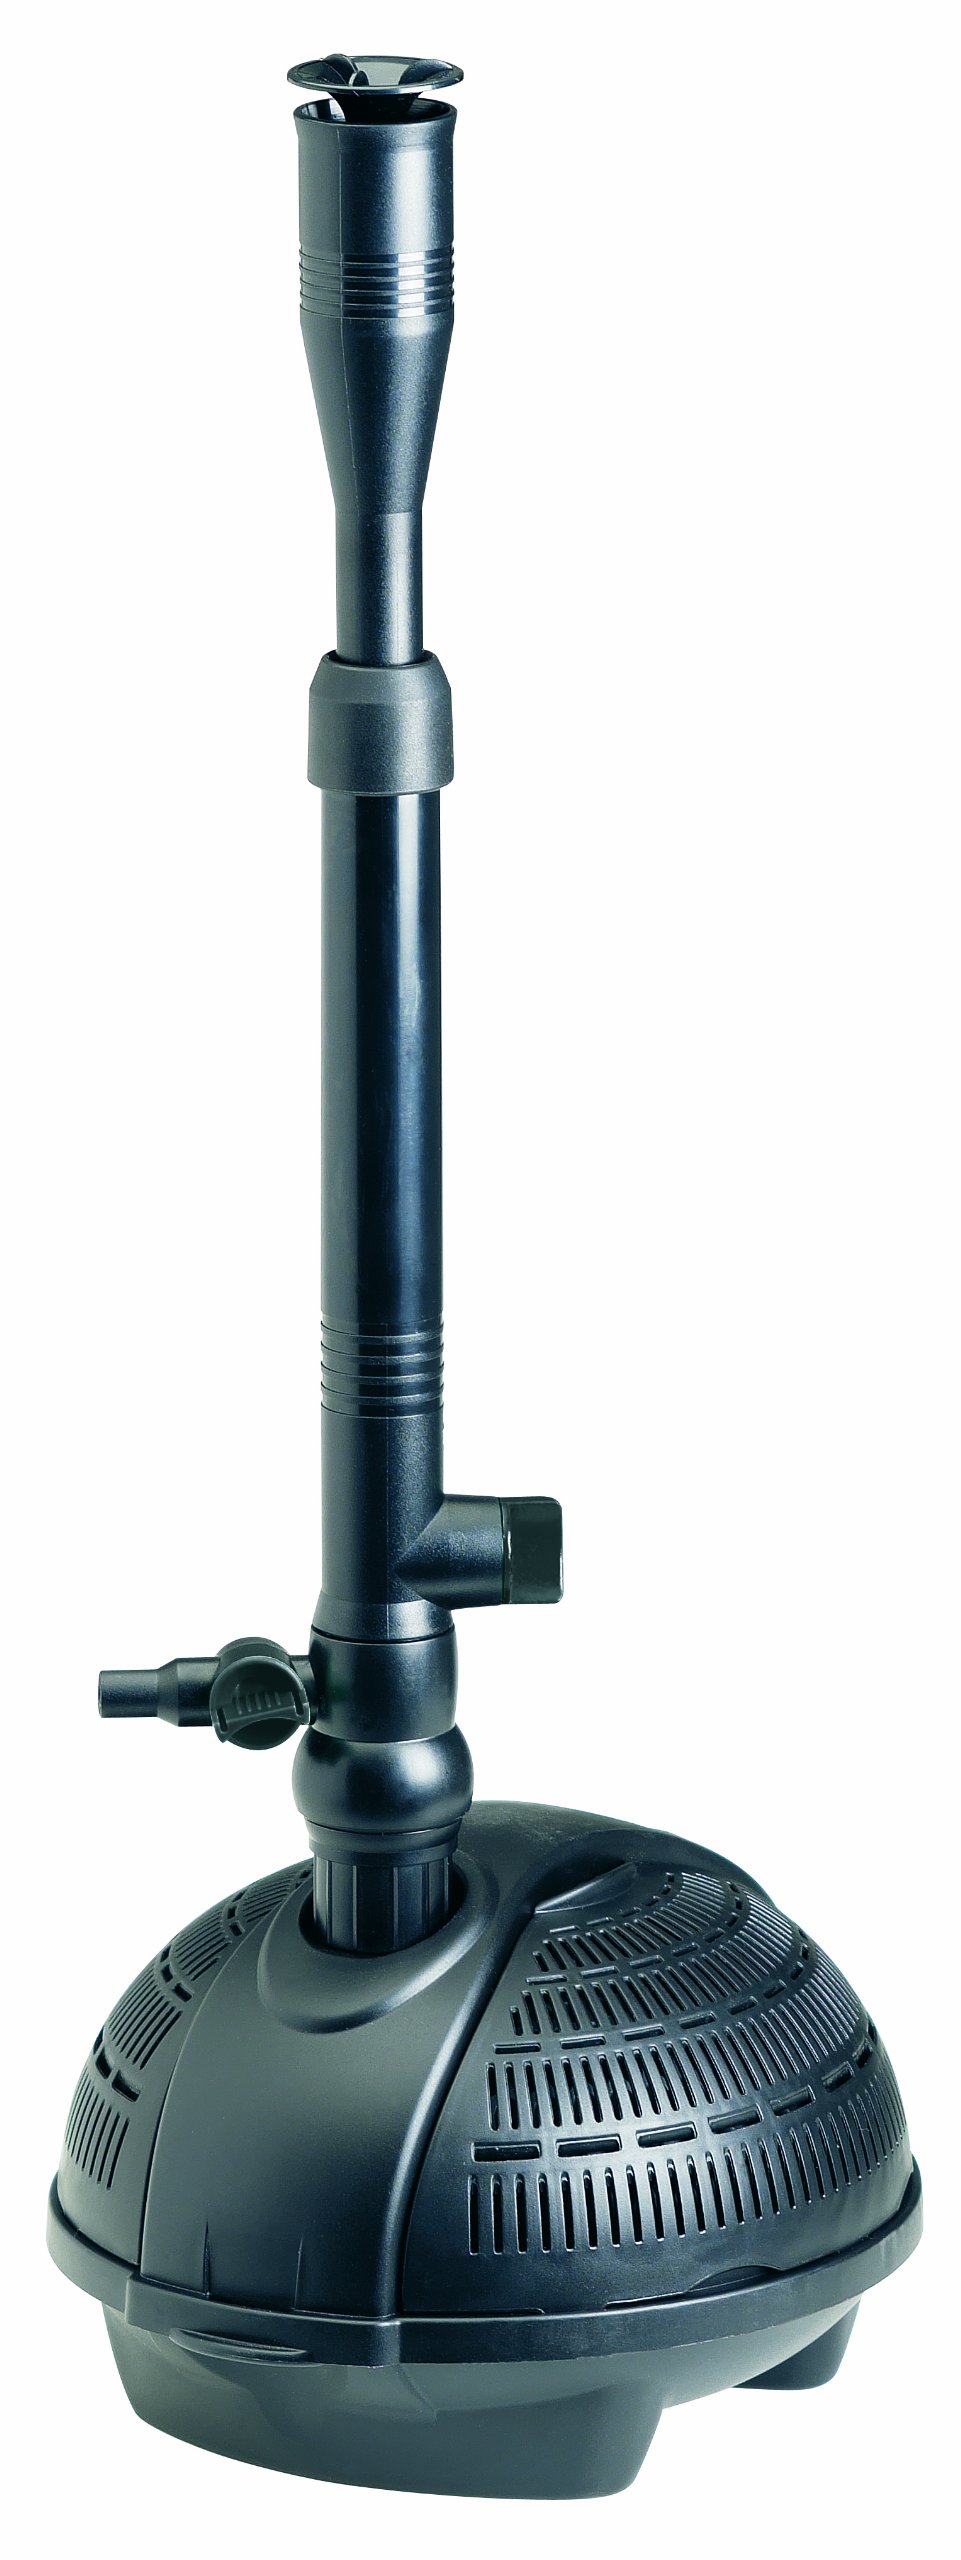 Pontec 57123 PondoVario 1500 - Wasserspielpumpe für den Einsatz in Gartenteich und Zierbrunnen / Teichpumpe / erzeugt vier unterschiedliche Fontänen